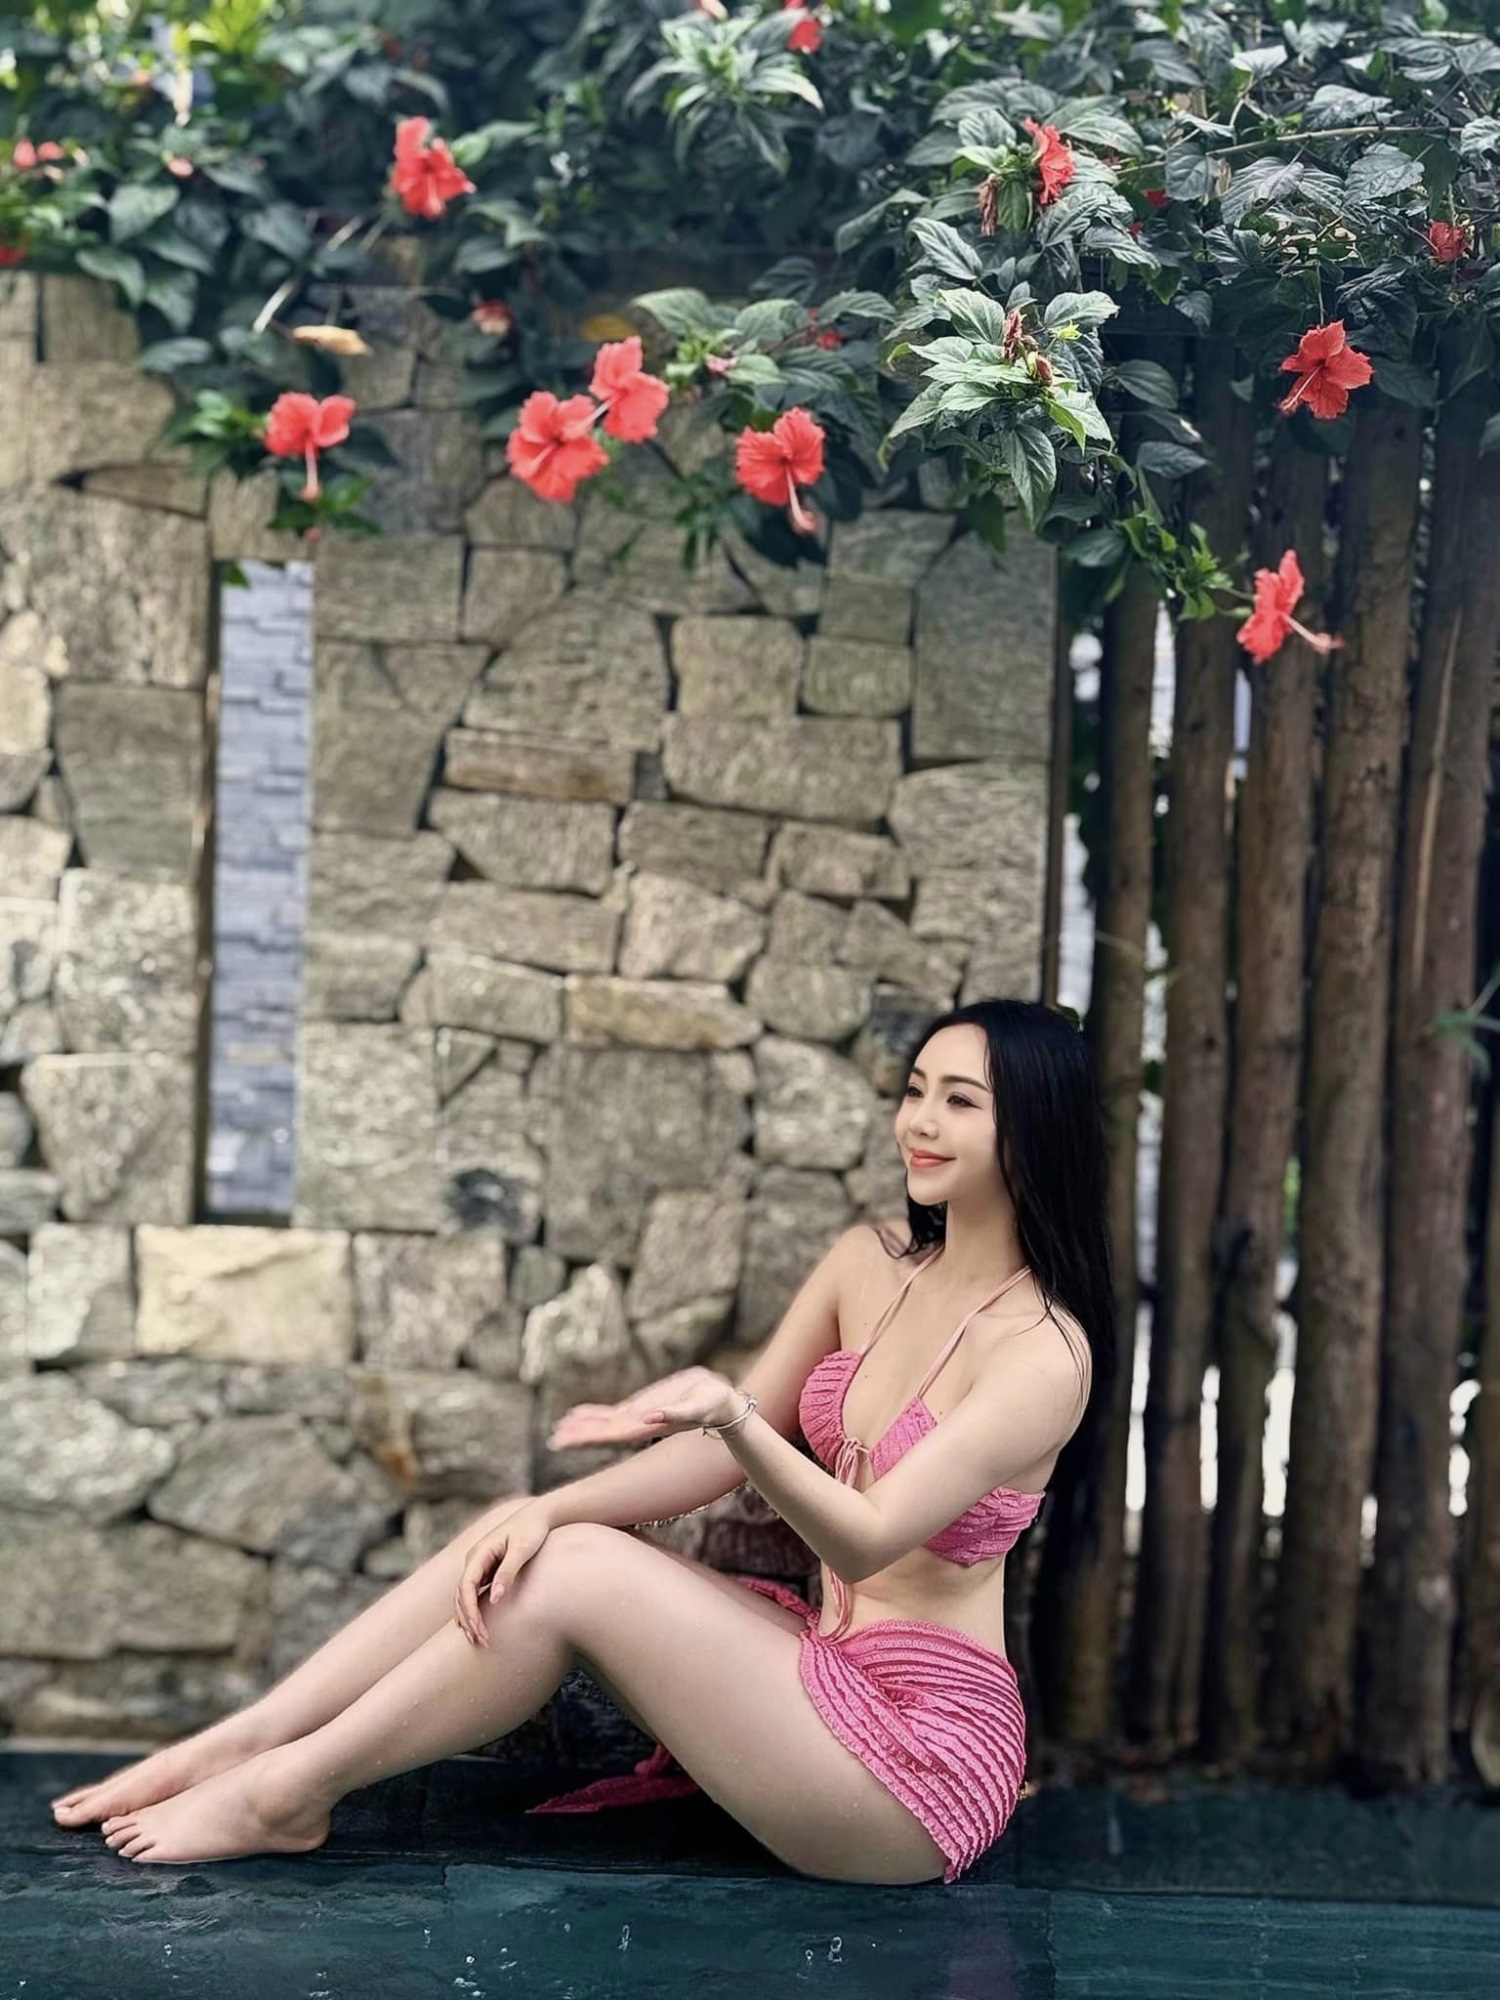 Hoa hậu Thùy Lâm, Quỳnh Kool và loạt mỹ nhân quê Thái Bình, một người giữ kỷ lục đi thi hoa hậu nhiều như đi chợ - Ảnh 7